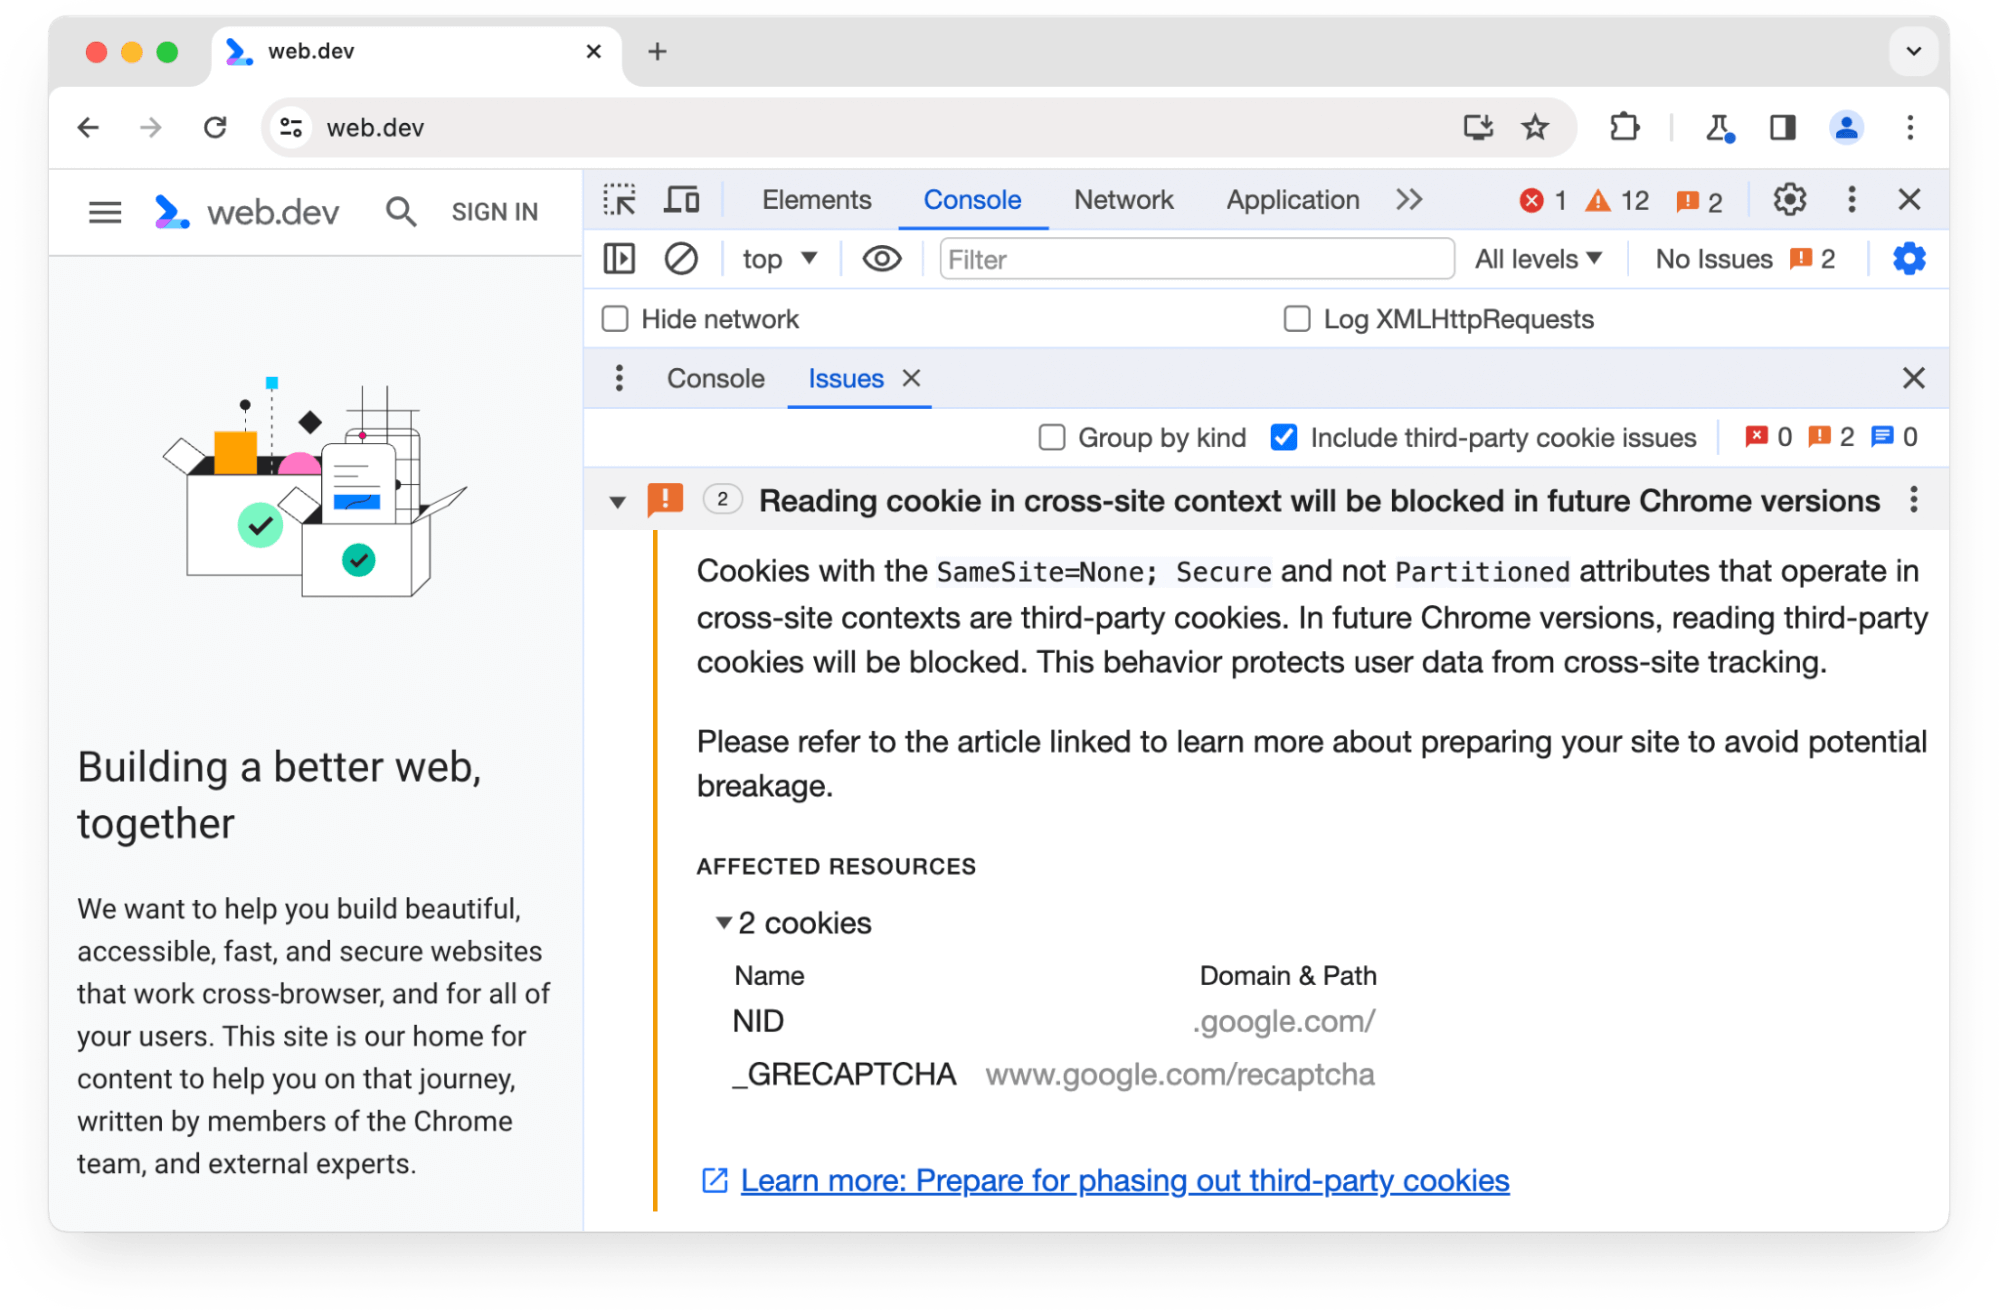 חלונית הבעיות בכלי הפיתוח ל-Chrome מציגה אזהרה לגבי שני קובצי cookie של צד שלישי שנחסמו בגרסאות עתידיות של Chrome.